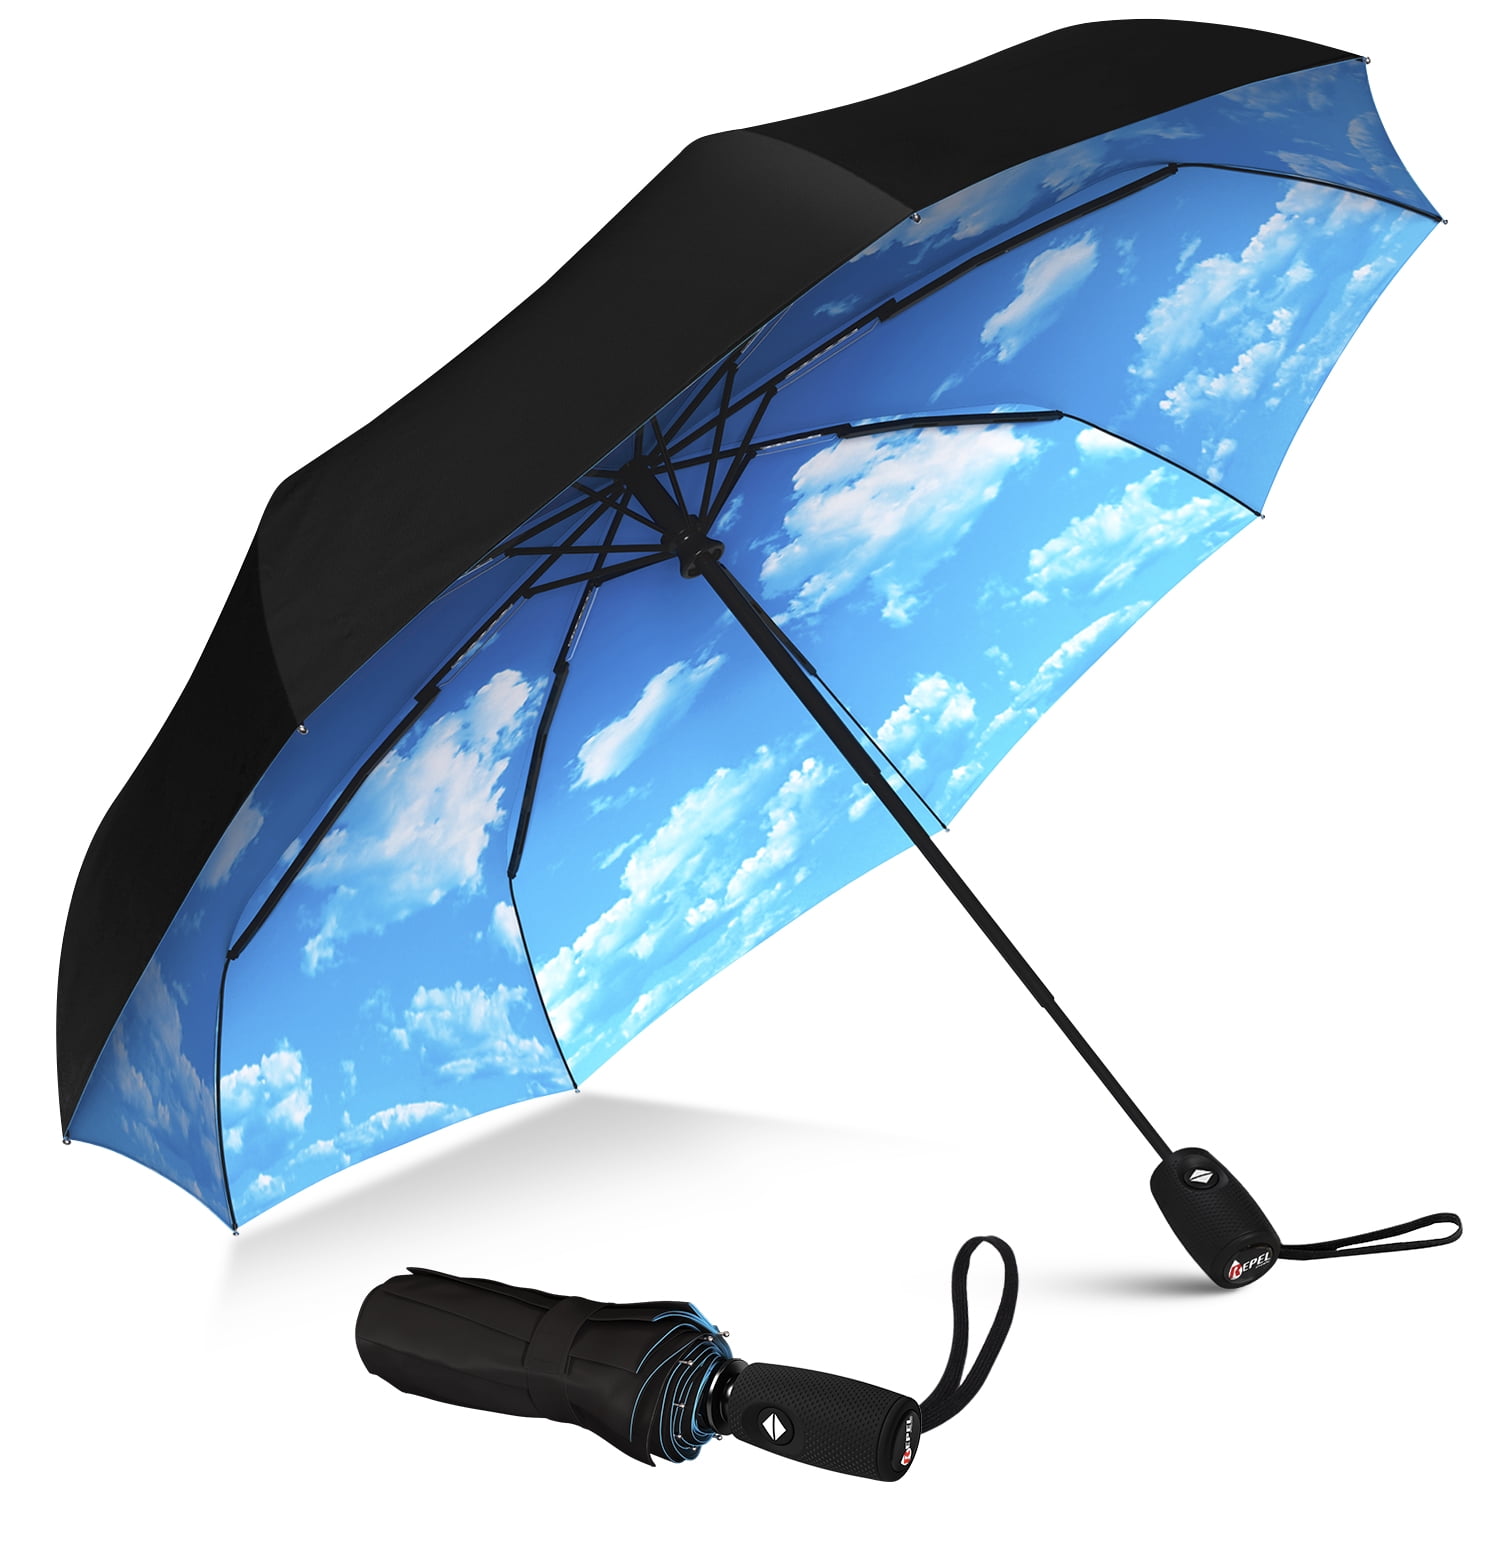 the repel windproof travel umbrella